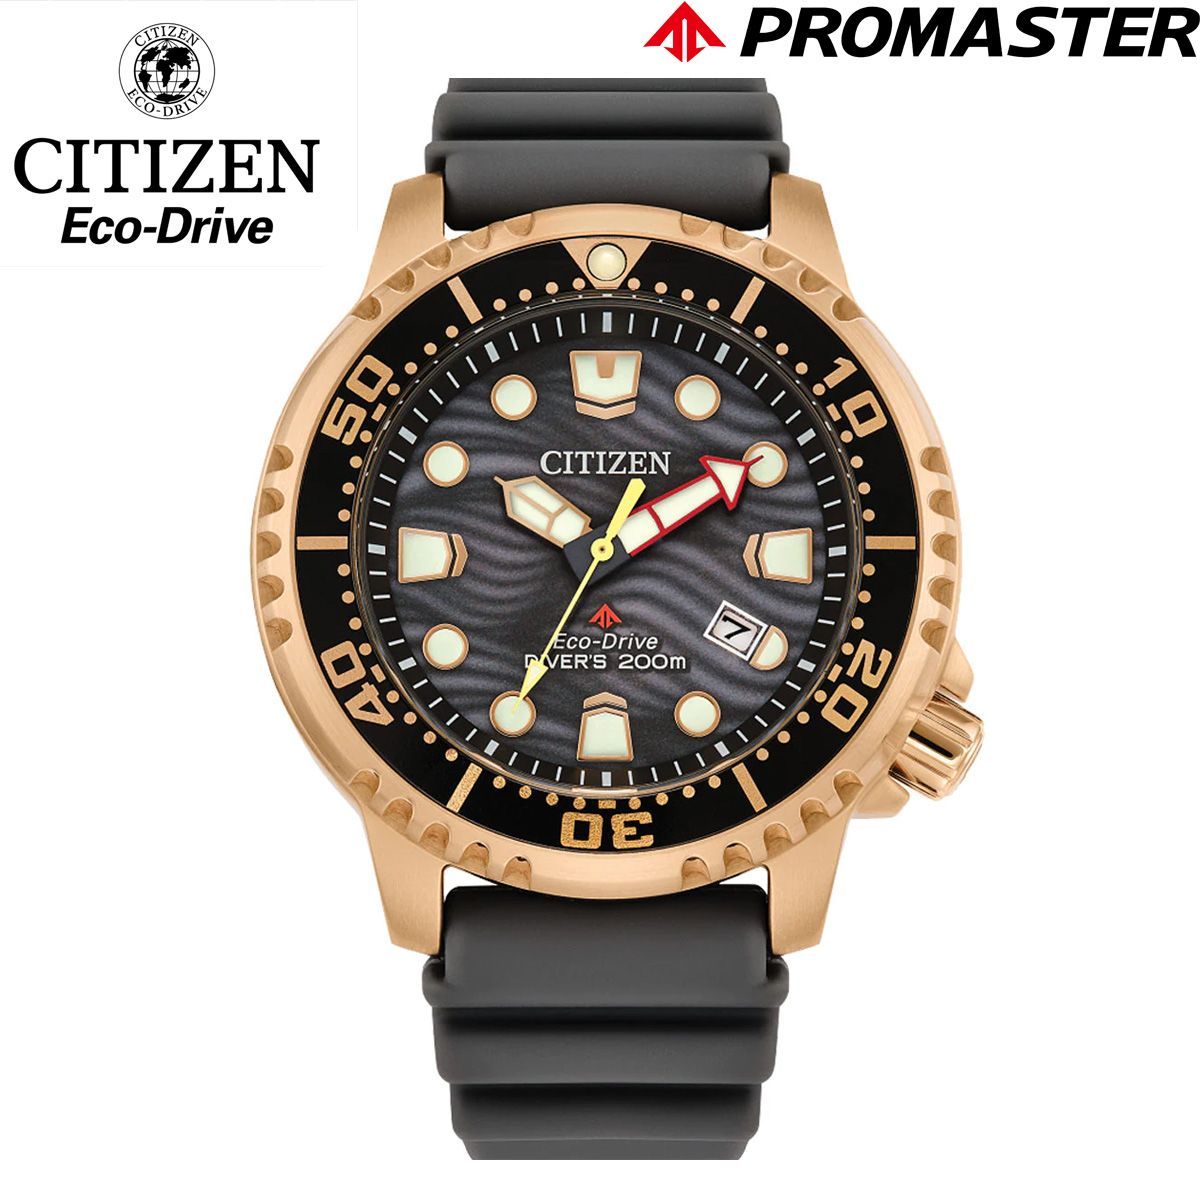 CITIZEN シチズン メンズ 腕時計 BN0163-00H PROMASTER エコドライブ ECO-DRIVE ソーラー DIVER 200M  プロマスター ダイバー 4時位置リューズ 男性 時計 アナログ カレンダー グレー ローズゴールド